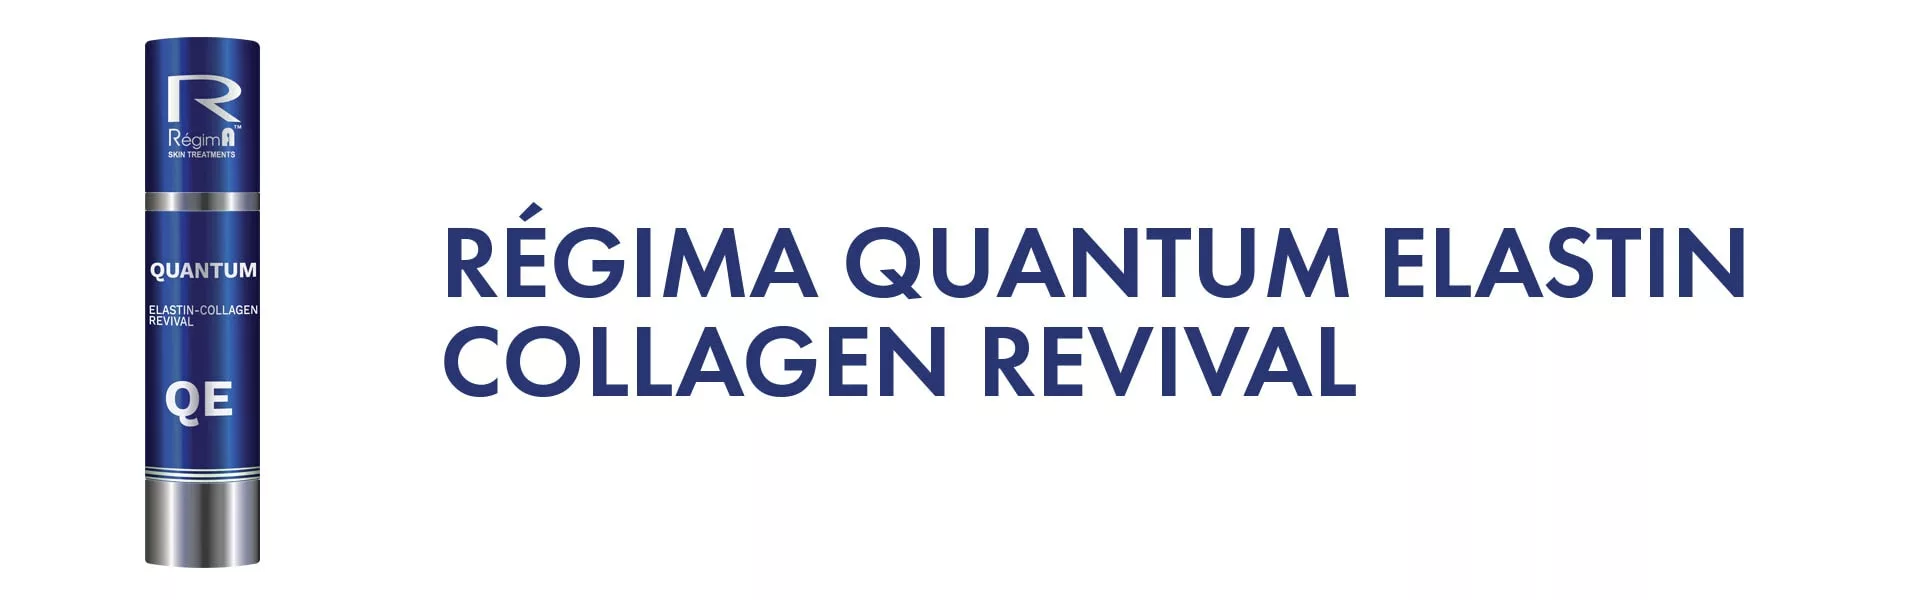 RégimA Quantum Elastin Collagen Revival